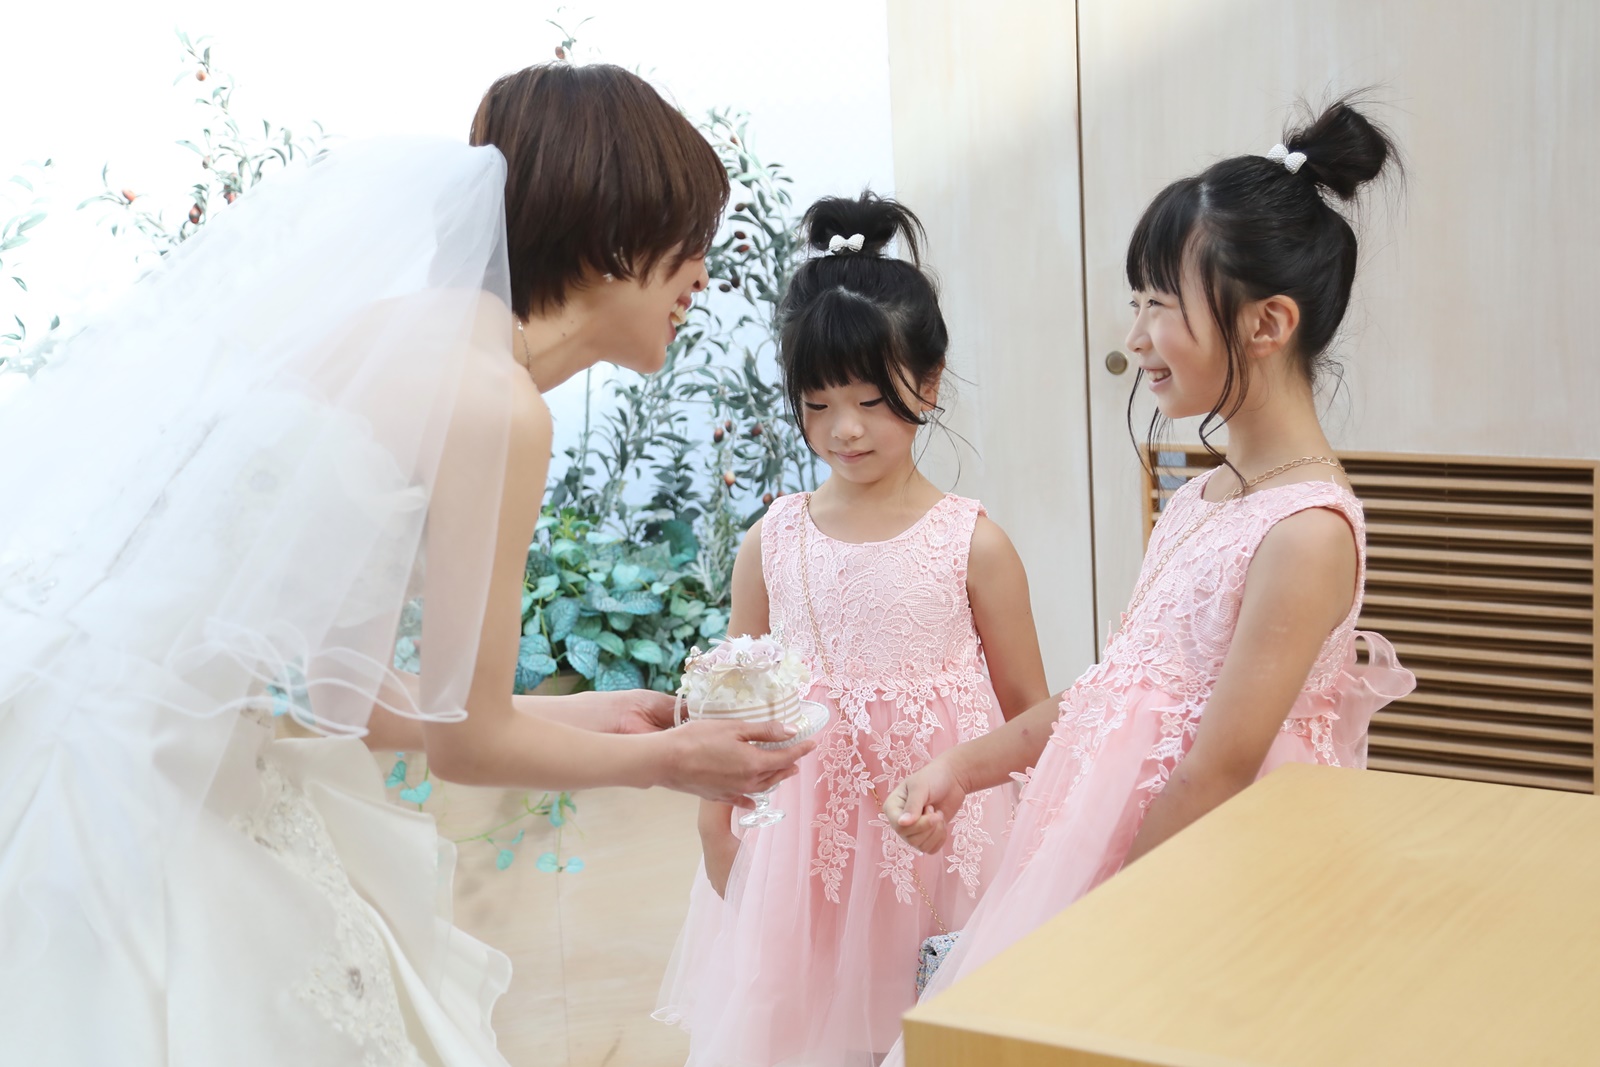 笑顔が可愛い お子様ゲストも楽しめる結婚式 ニュース ブログ 滋賀 近江八幡の結婚式場 公式 ヴィラ アンジェリカ